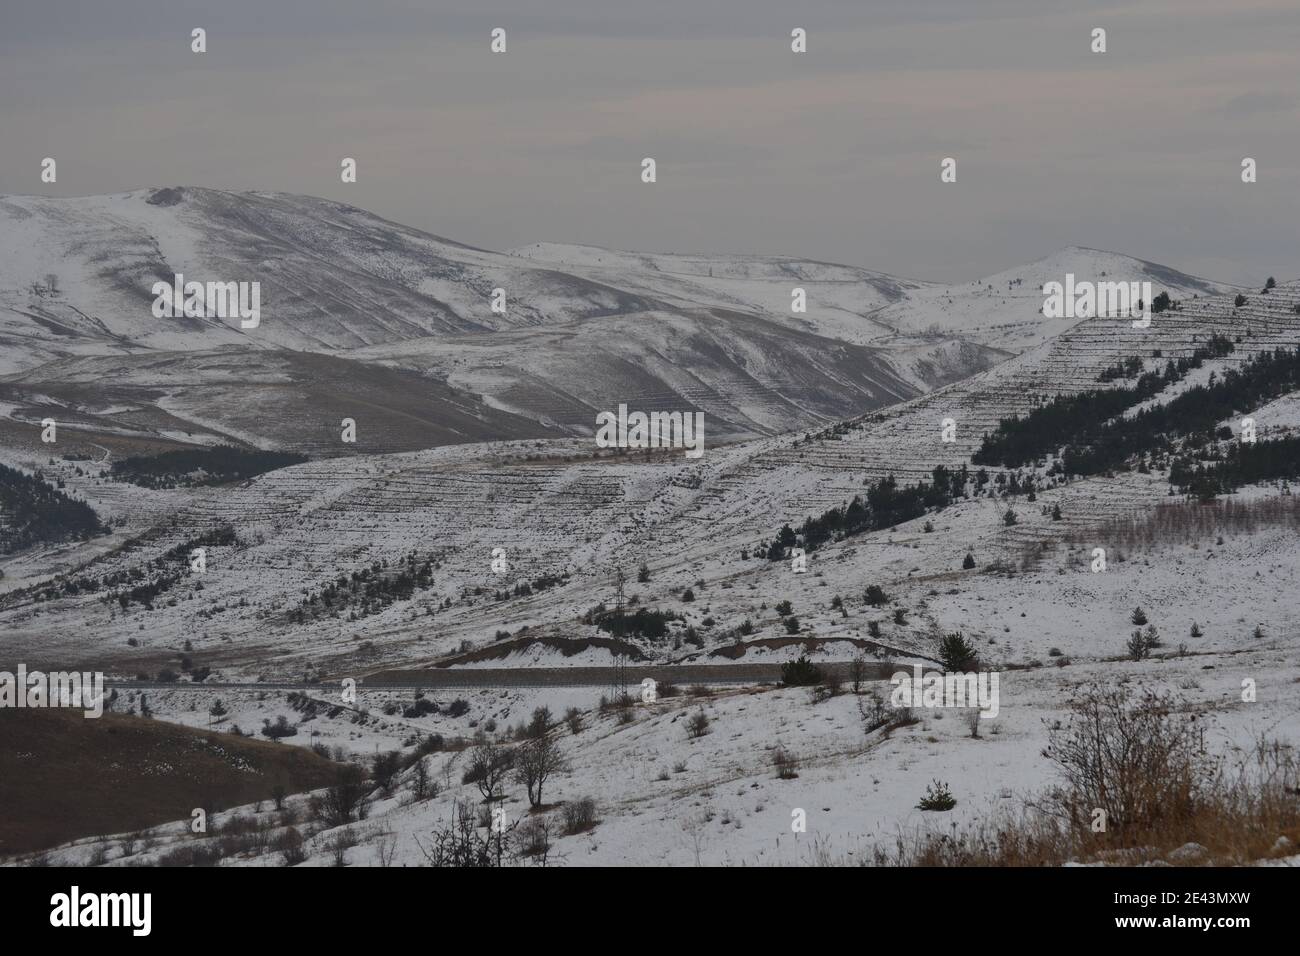 Rundreise in Anatolien durch Bergigeregionen Stock Photo